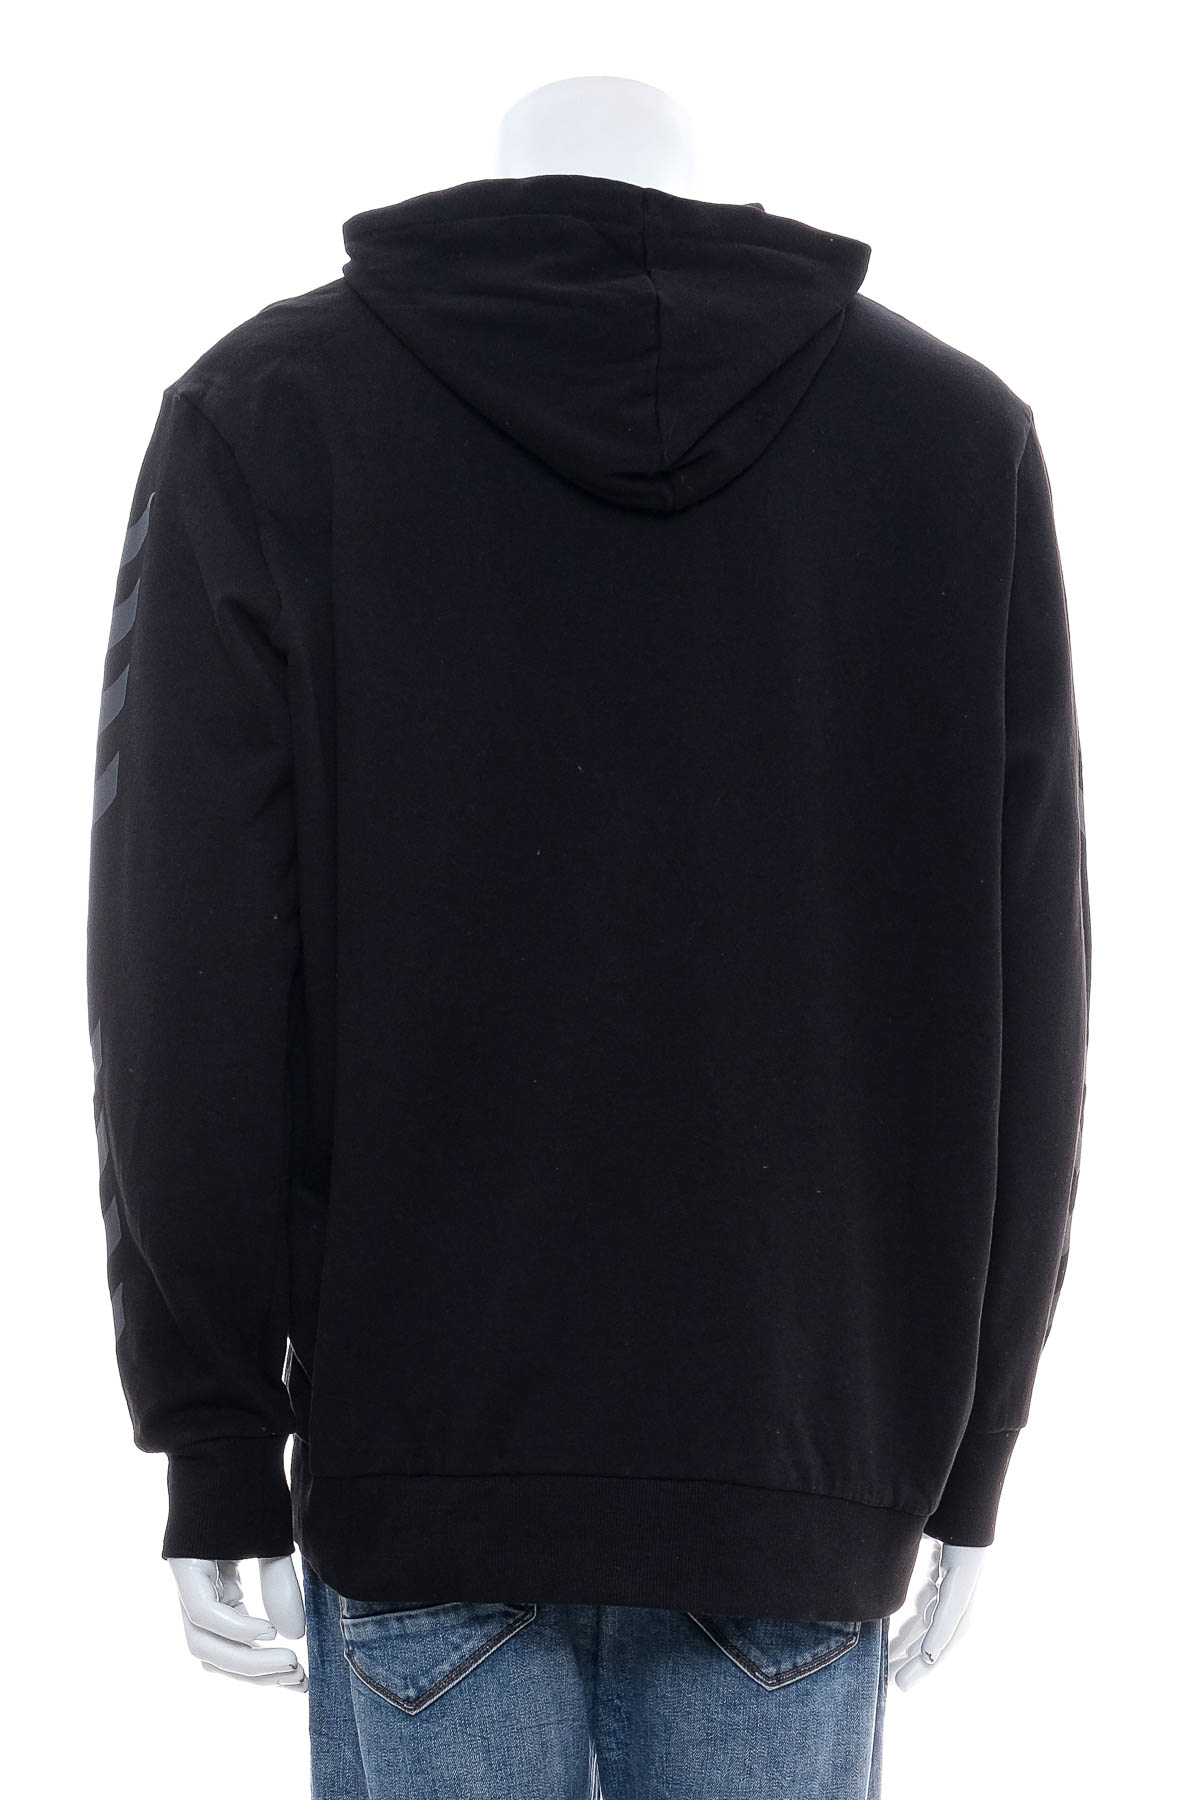 Men's sweatshirt - Hummel - 1